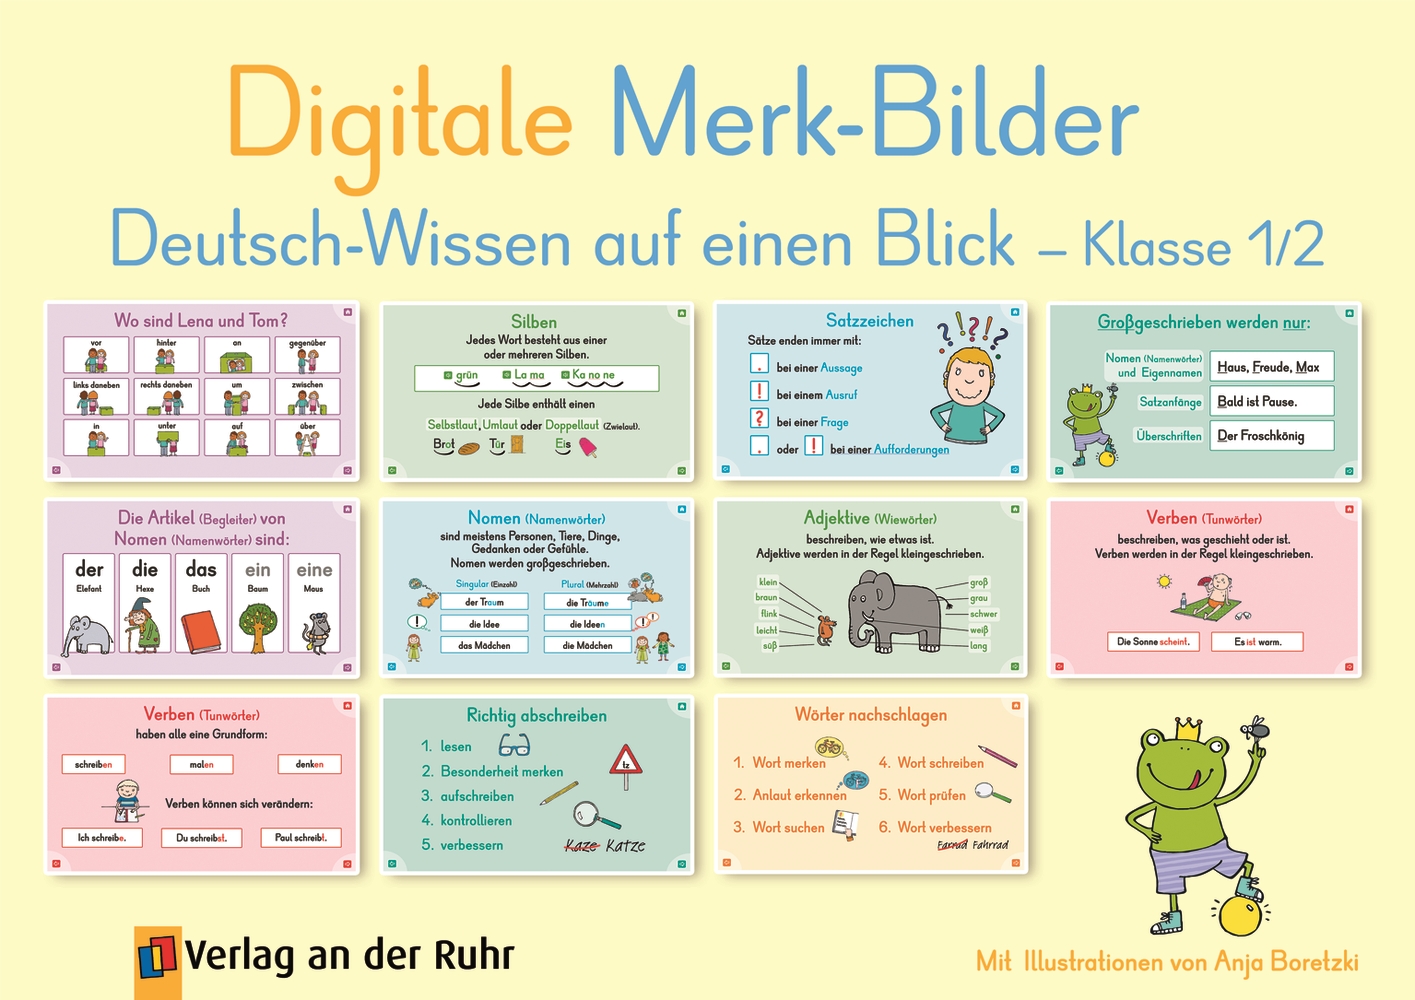 Digitale Merk-Bilder - Deutsch-Wissen auf einen Blick, Klasse 1/2 - Premium-Lizenz - Online